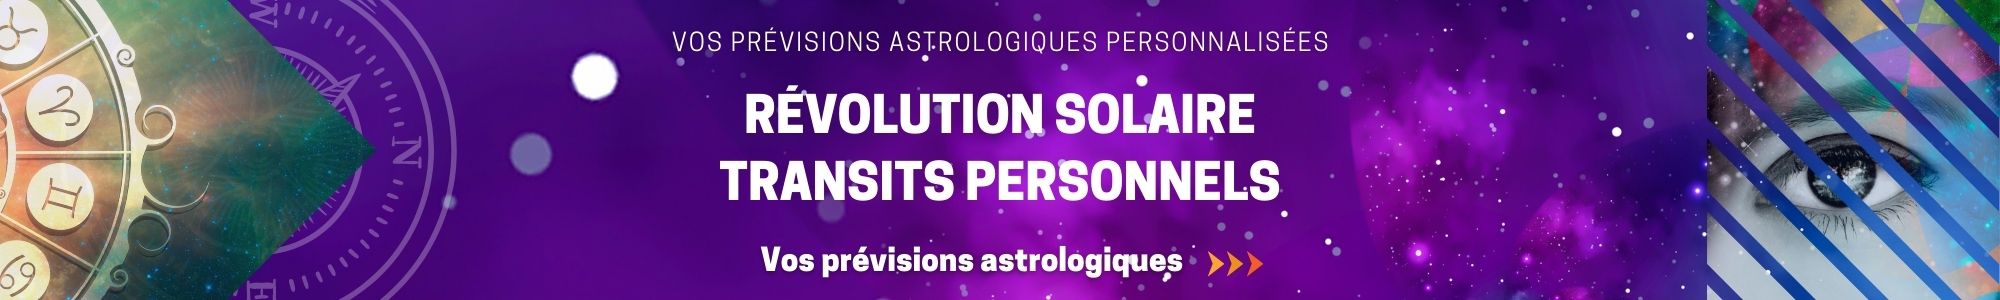 Prévisions astrologiques personnalisées